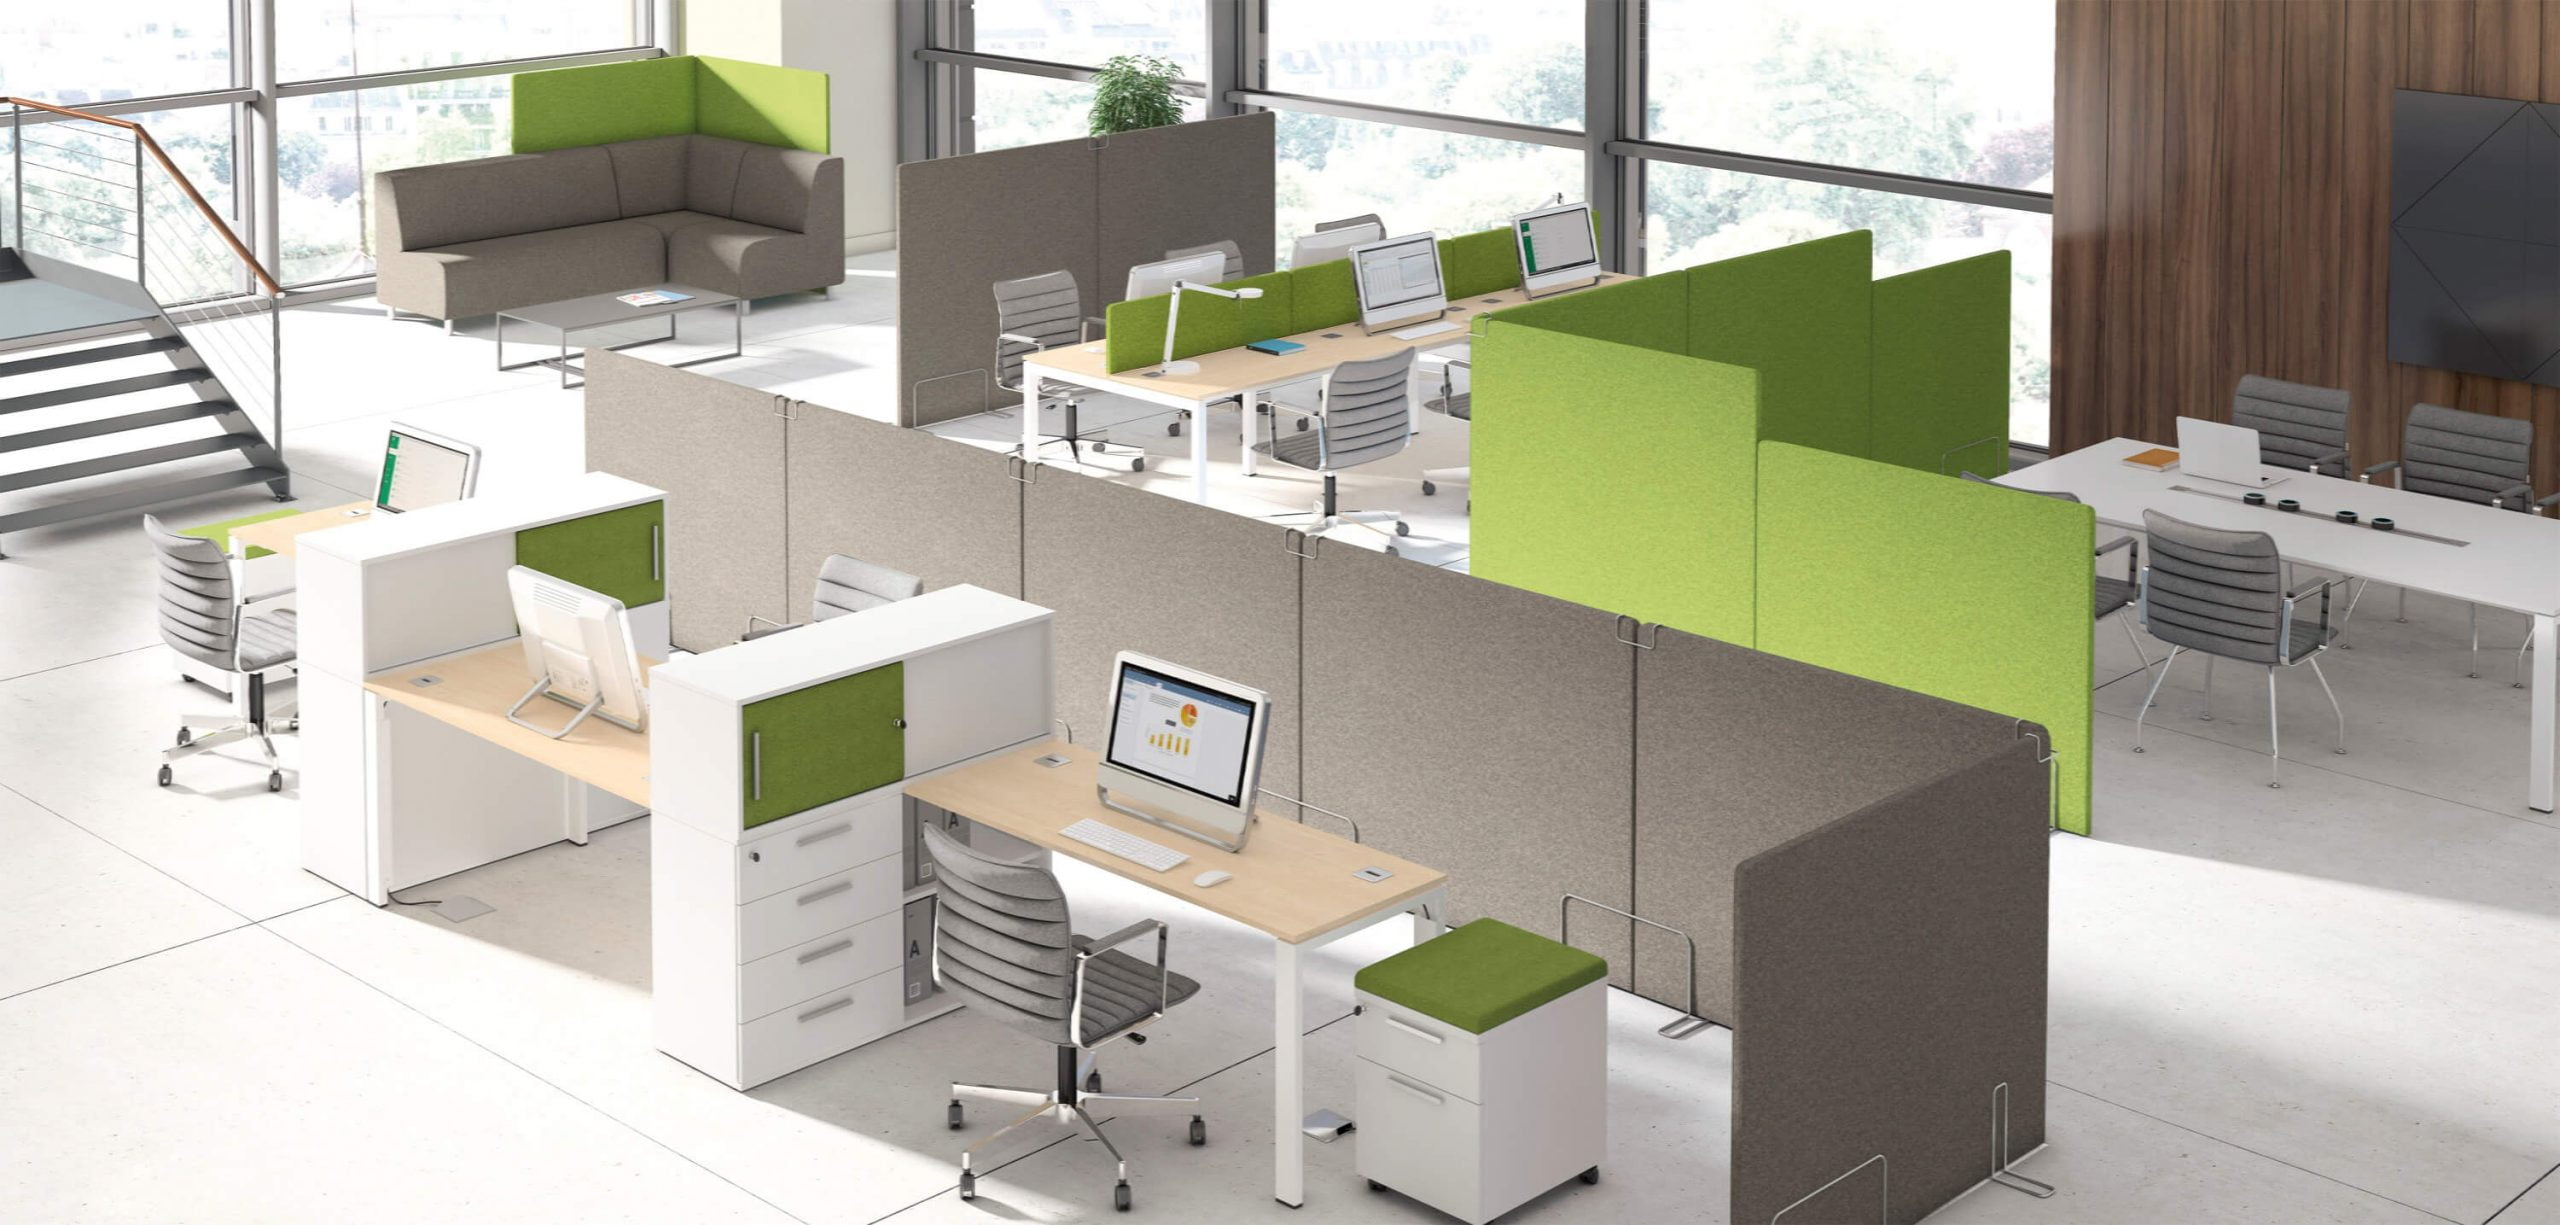 zielone akustyczne ścianki działowe w biurze